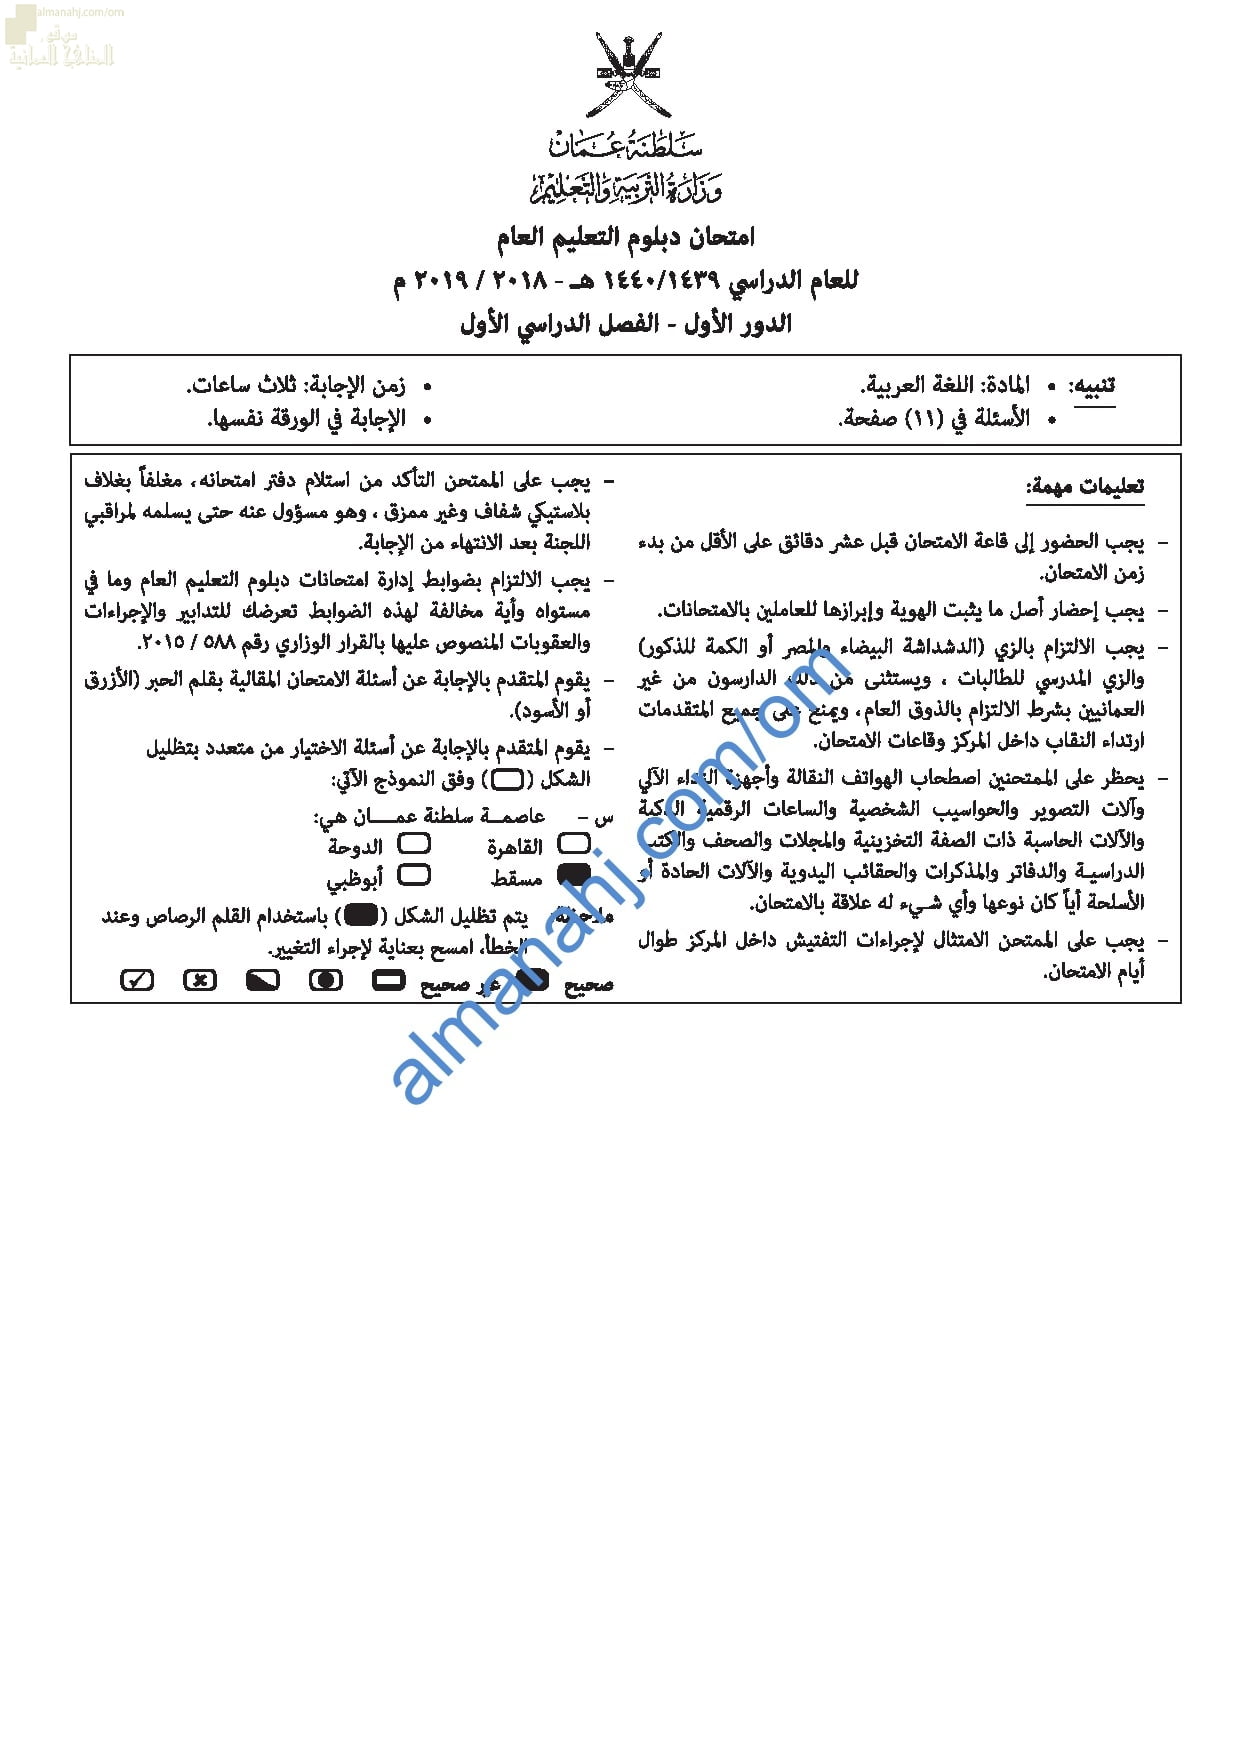 تجميع أسئلة الامتحانات الرسمية للأعوام (~) (لغة عربية) الثاني عشر